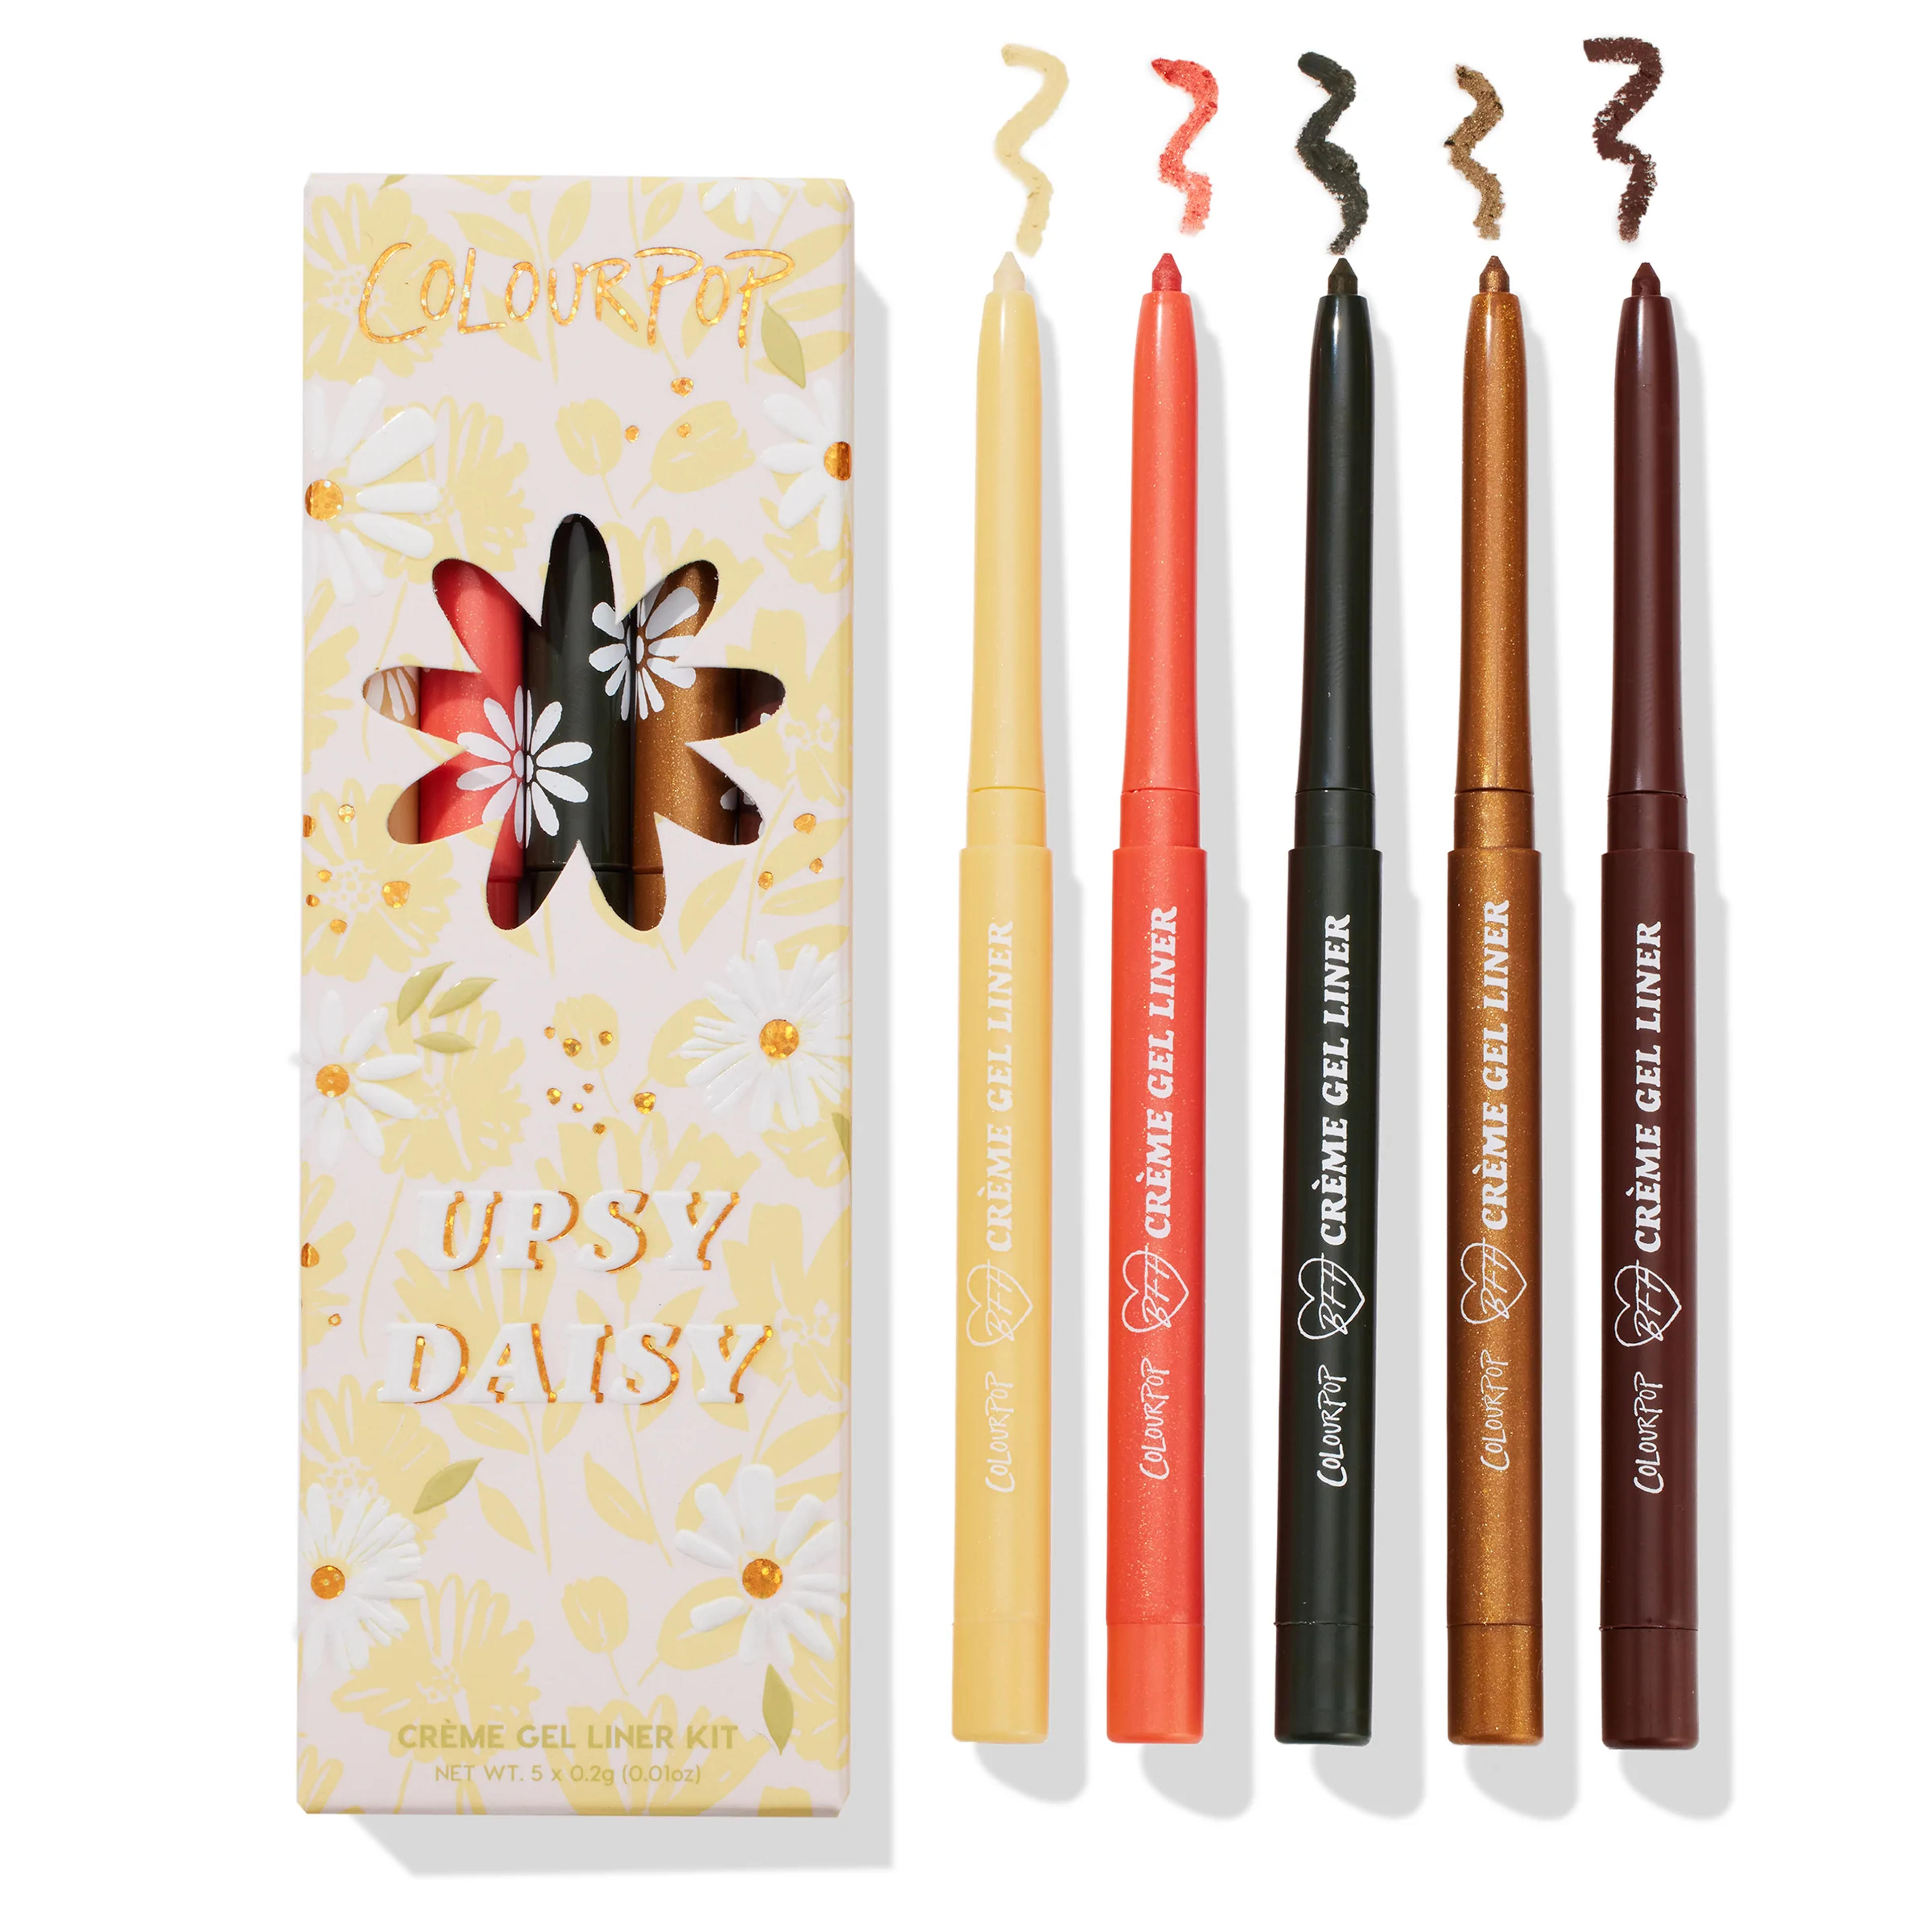 Upsy Daisy Eyeliner Pencil Kit | ColourPop